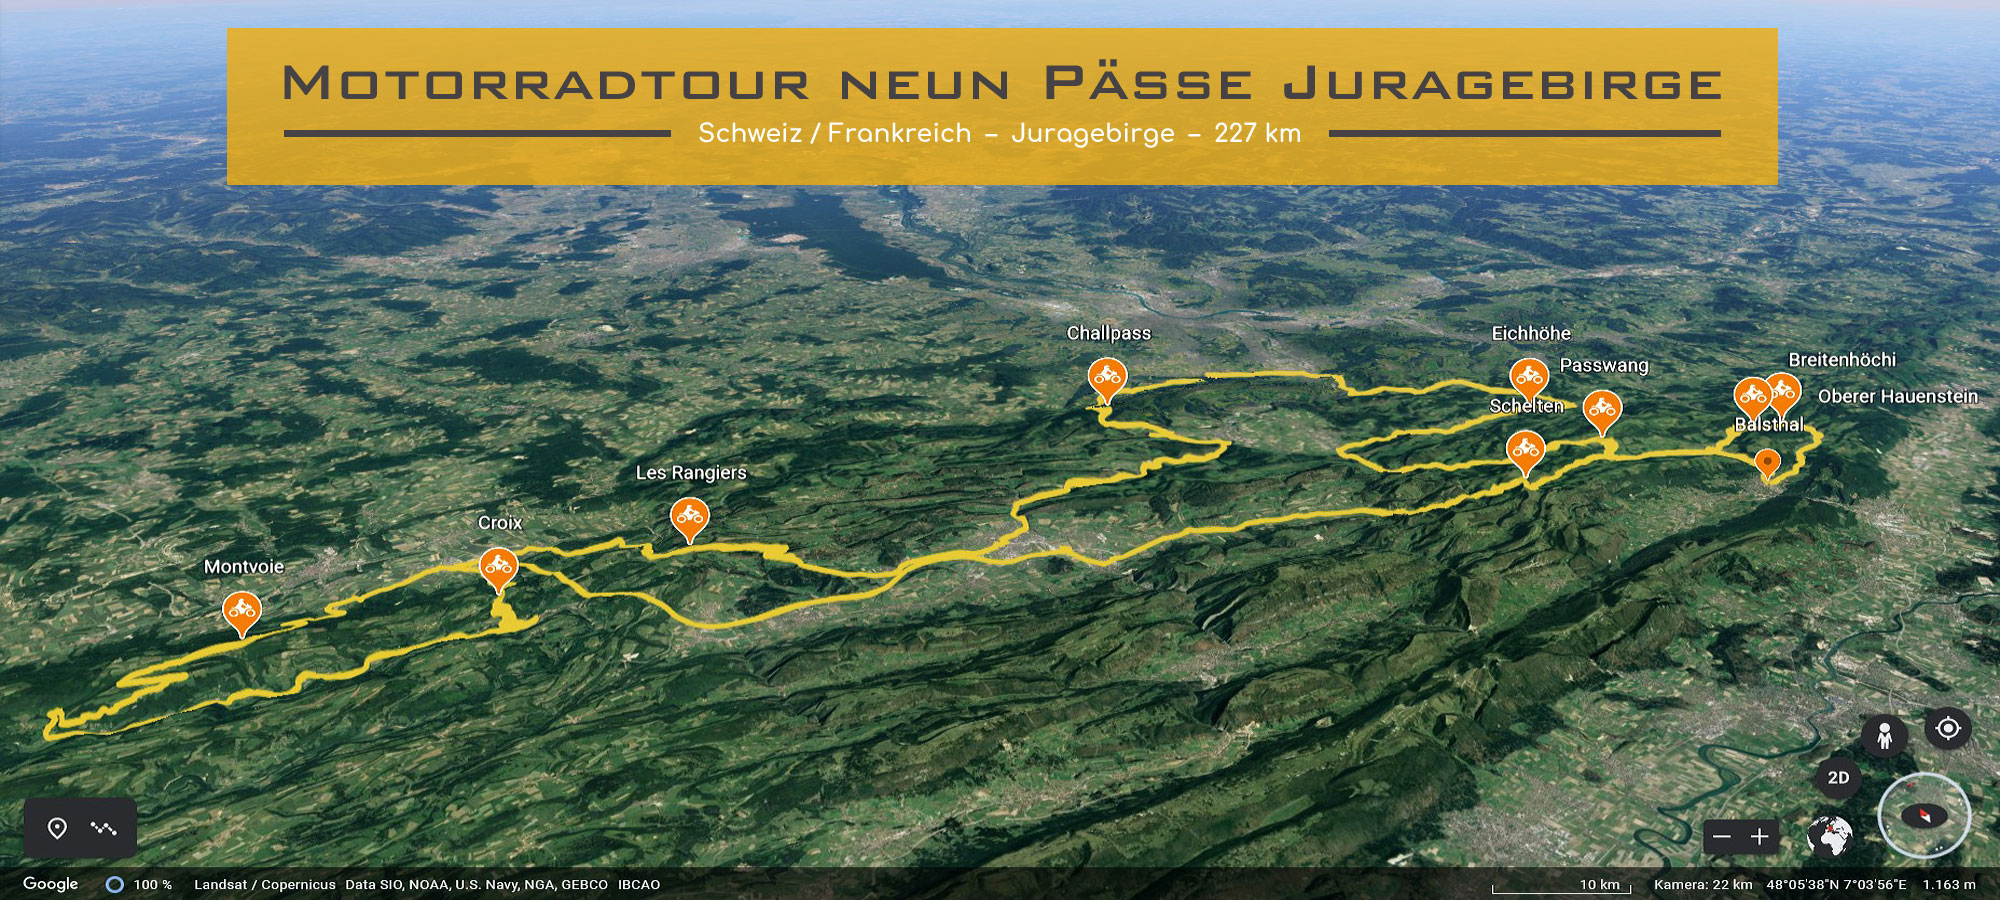 Ausschnitt Karte Schweiz und Frankreich. Die Strecke der Motorradtour ist eingezeichnet. Im Textfeld steht geschrieben: Motorradtour ueber neun Paesse im Juragebirge.